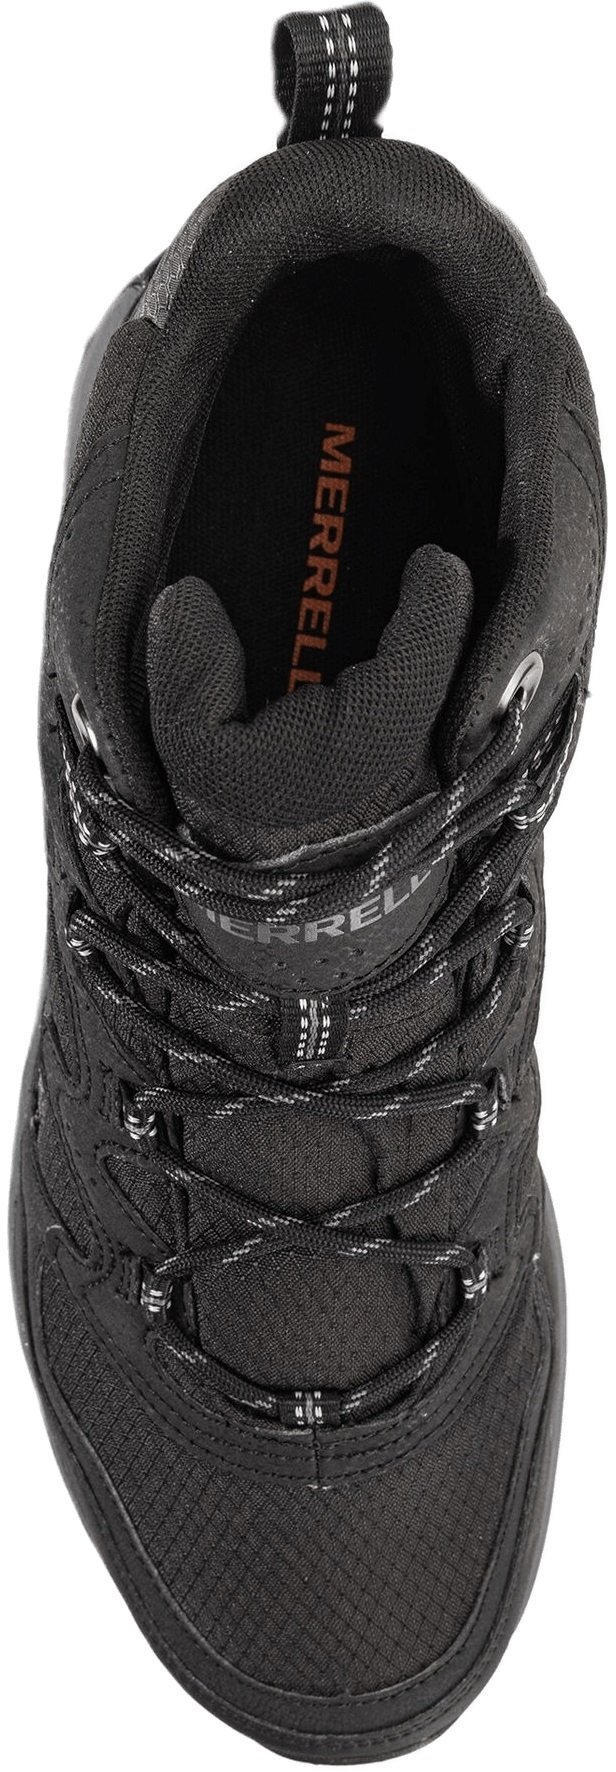 Ботинки мужские Merrell West Rim Sport black 45 черный фото 6